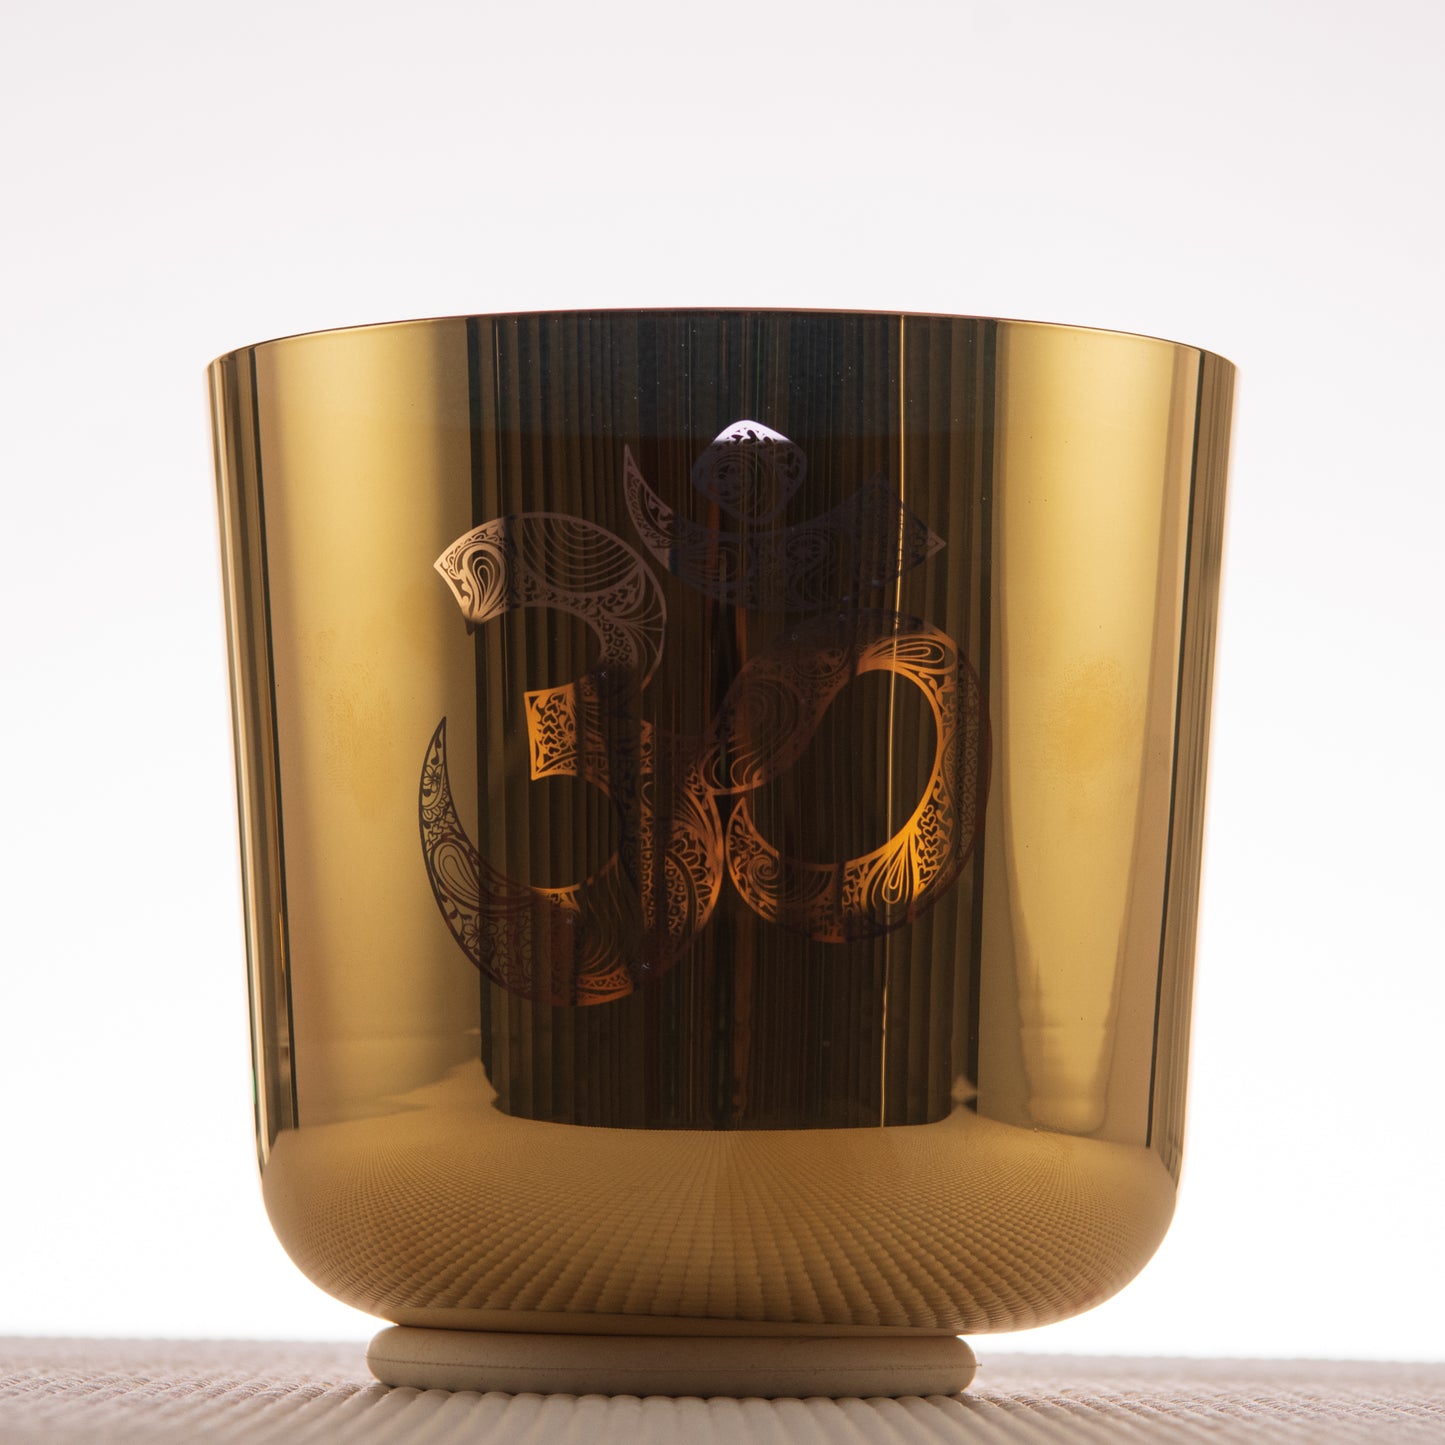 6.5" F+14 24k Gold Crystal Singing Bowl with Sacred Om Symbol